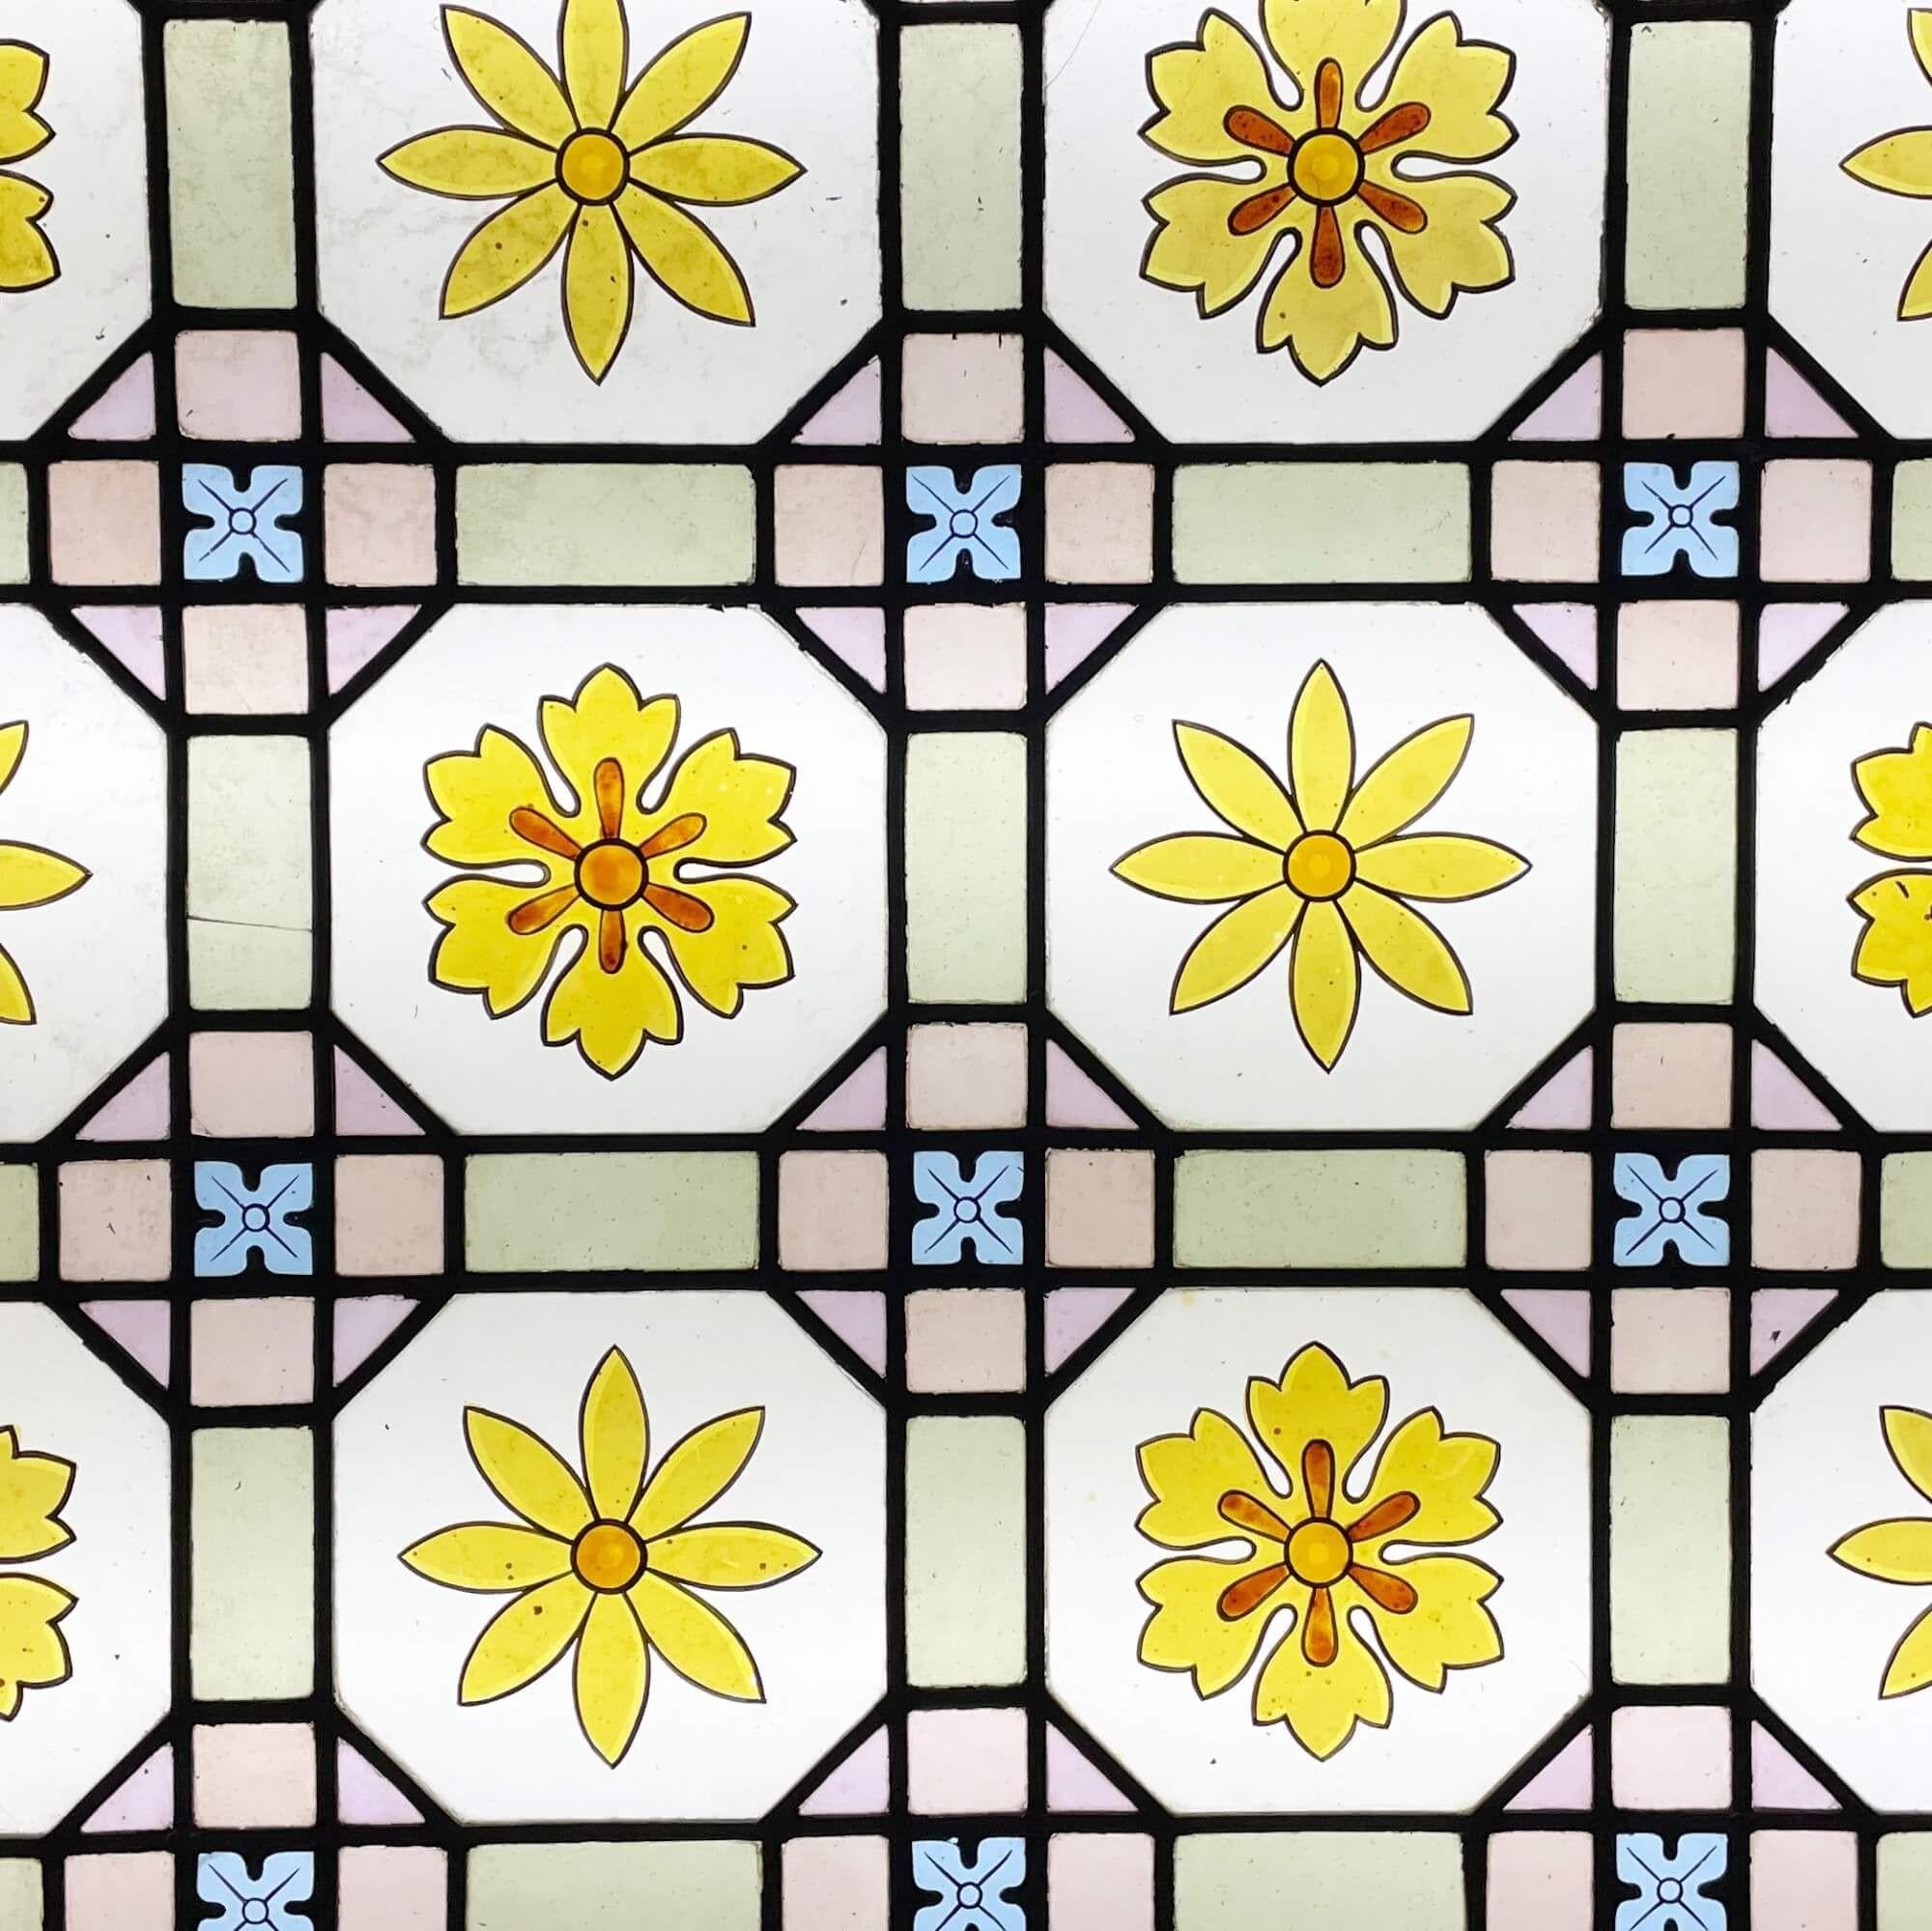 Vitrail antique à motifs floraux de la fin de l'époque victorienne, datant d'environ 1890. Ce vitrail de la fin du XIXe siècle est tout simplement magnifique. Il présente un ensemble de fleurs vibrantes ressemblant à des marguerites, accompagnées de